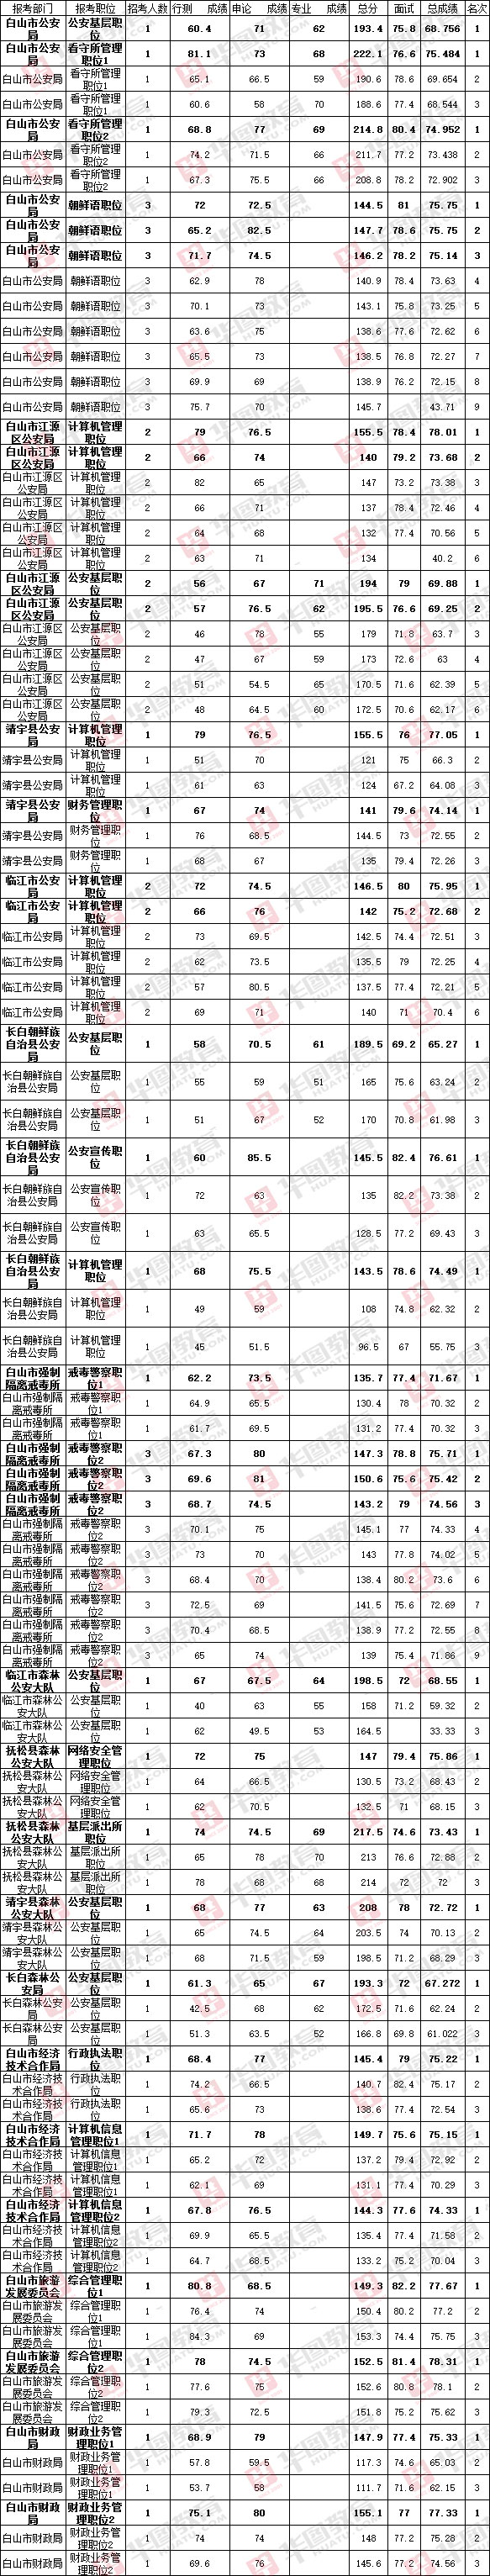 2018年吉林省公务员考试录用分数线